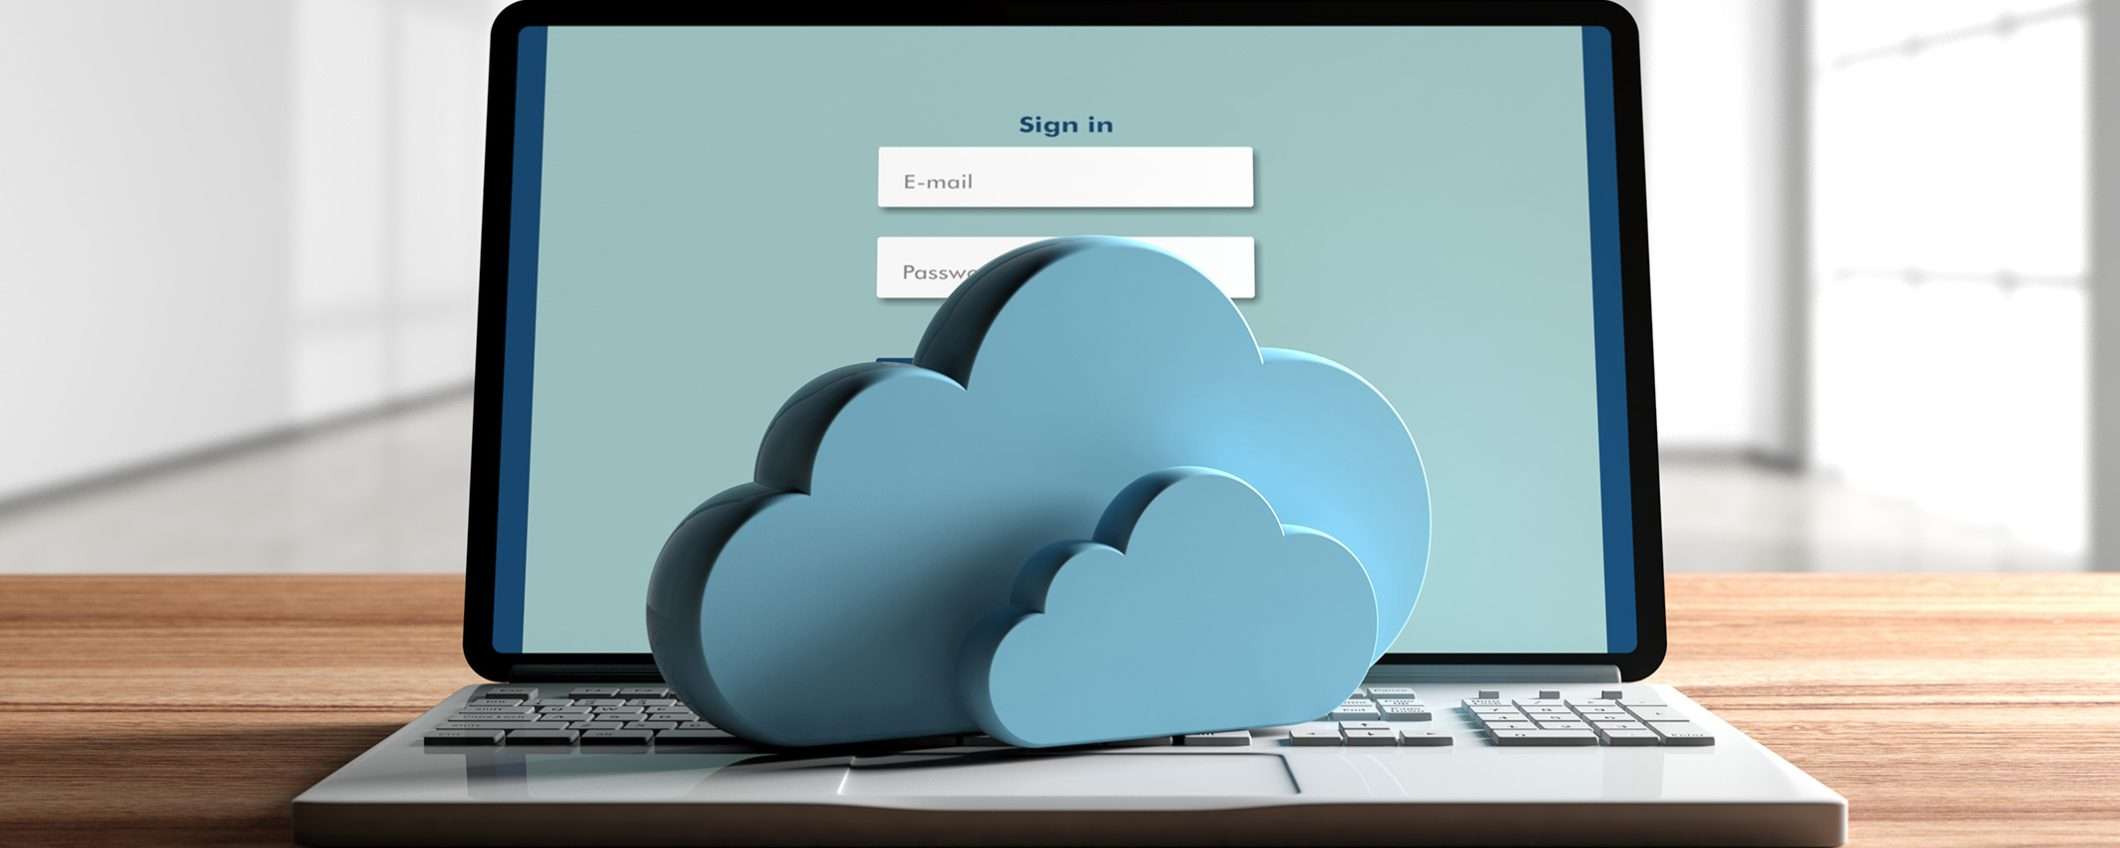 Internxt ti offre cloud GRATIS per testare le sue funzionalità